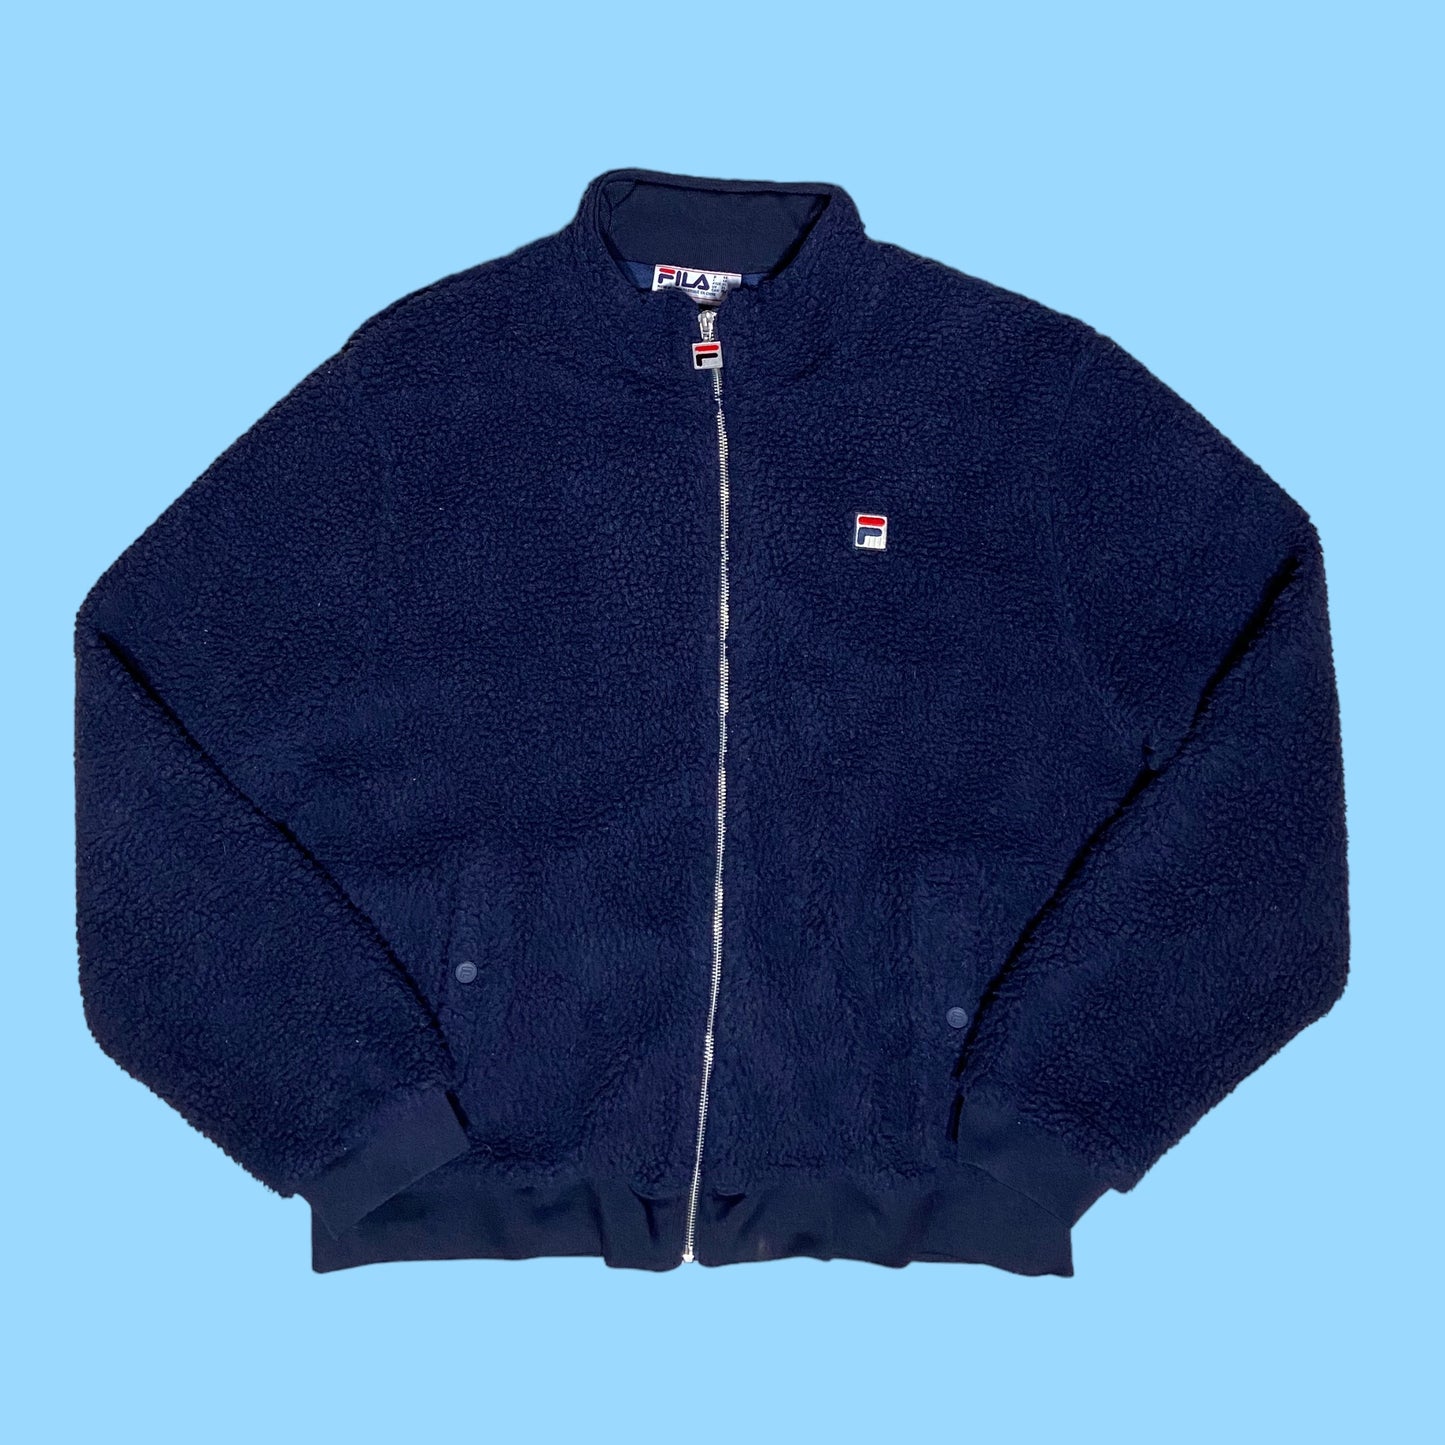 Vintage Fila fleece jacket - XL